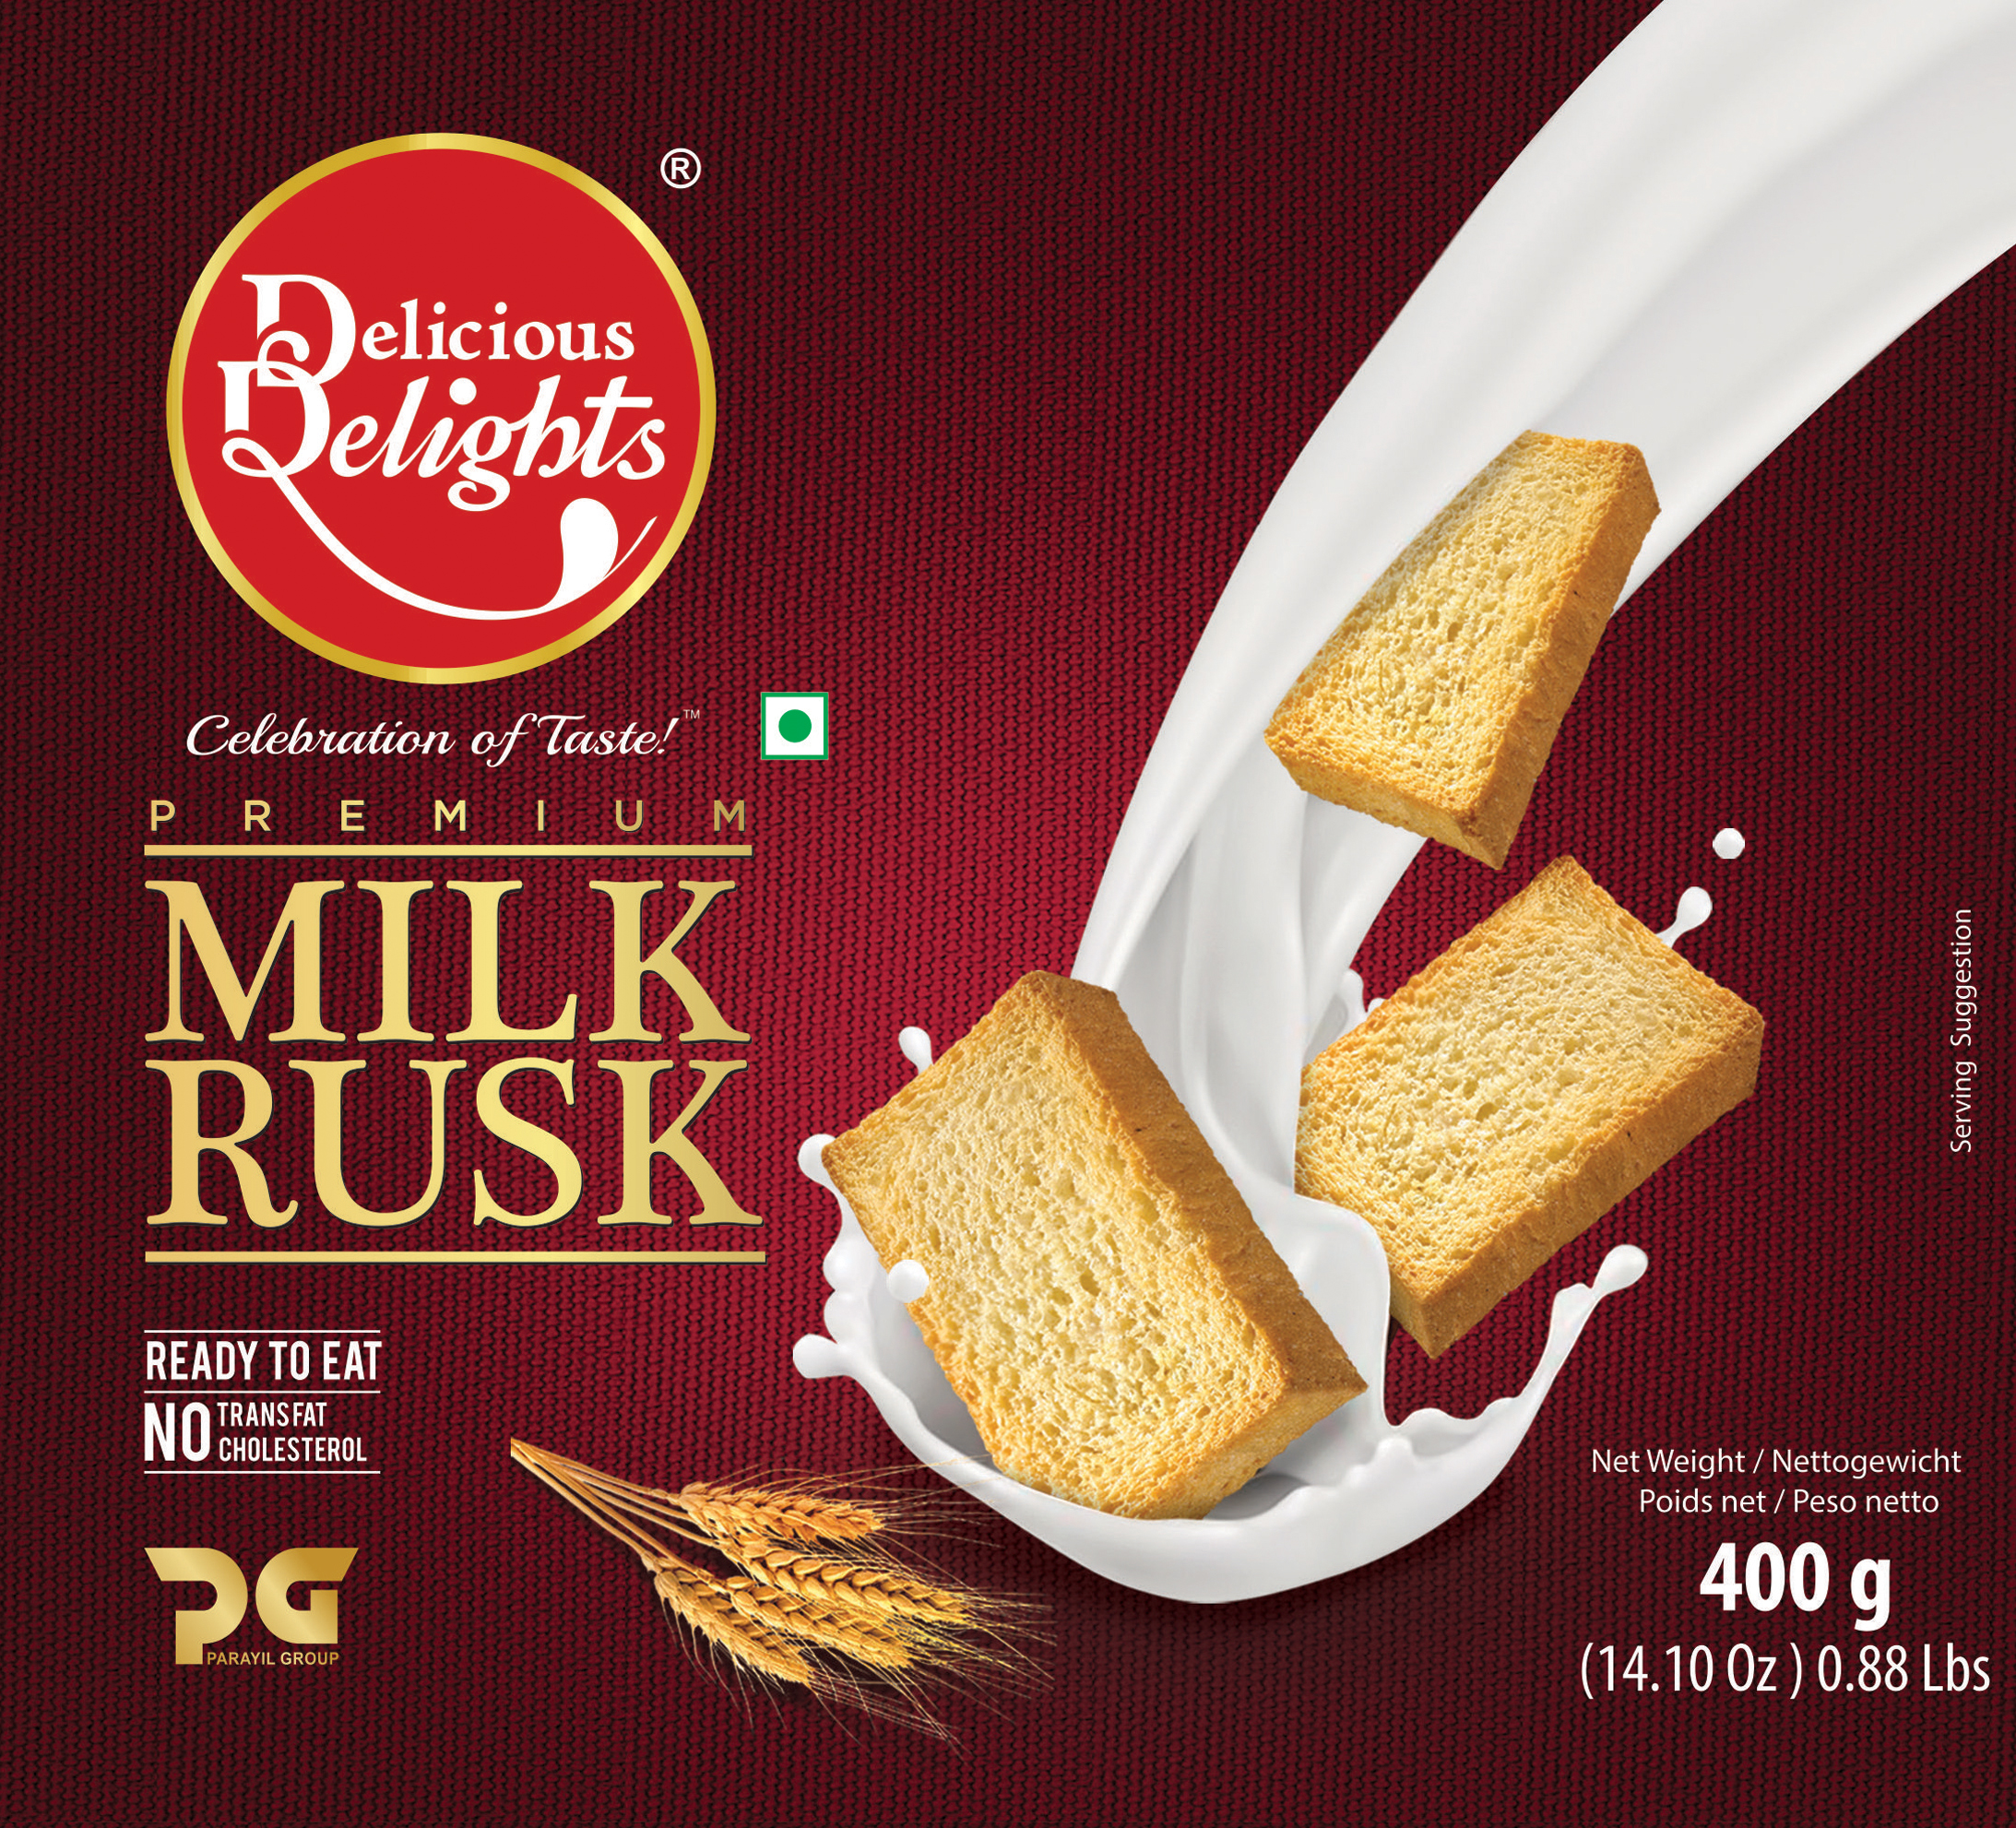 Delicious Delights Milk Rusk